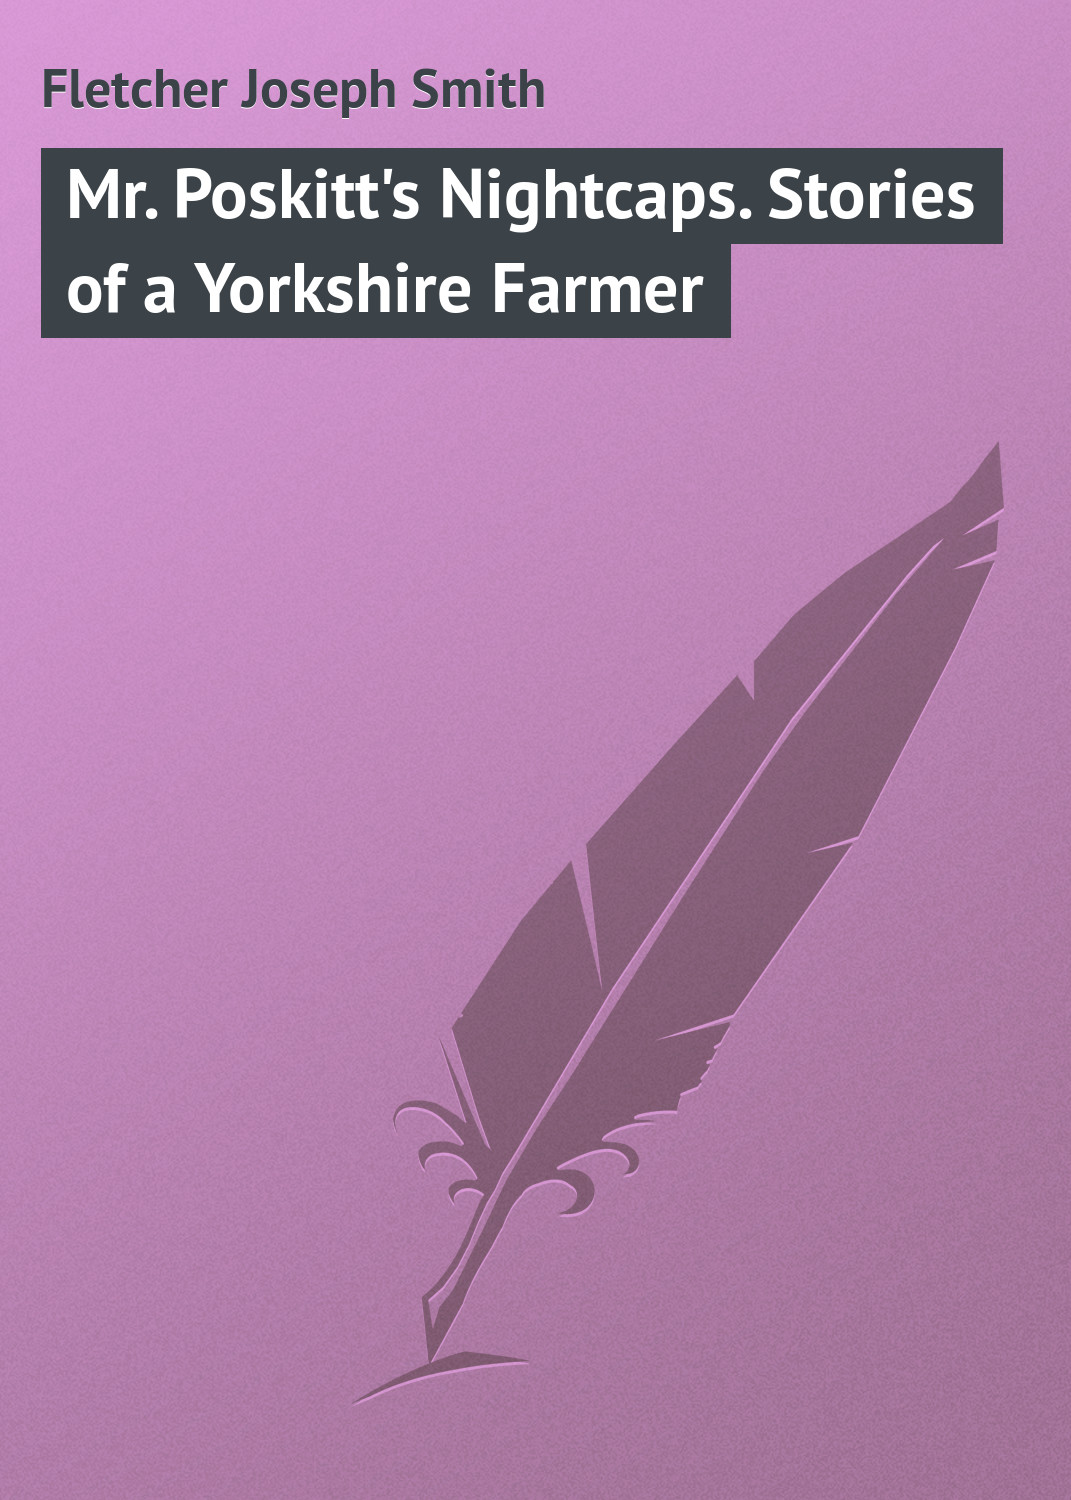 Книга Mr. Poskitt's Nightcaps. Stories of a Yorkshire Farmer из серии , созданная Joseph Fletcher, может относится к жанру Зарубежная классика, Иностранные языки. Стоимость электронной книги Mr. Poskitt's Nightcaps. Stories of a Yorkshire Farmer с идентификатором 23162331 составляет 5.99 руб.